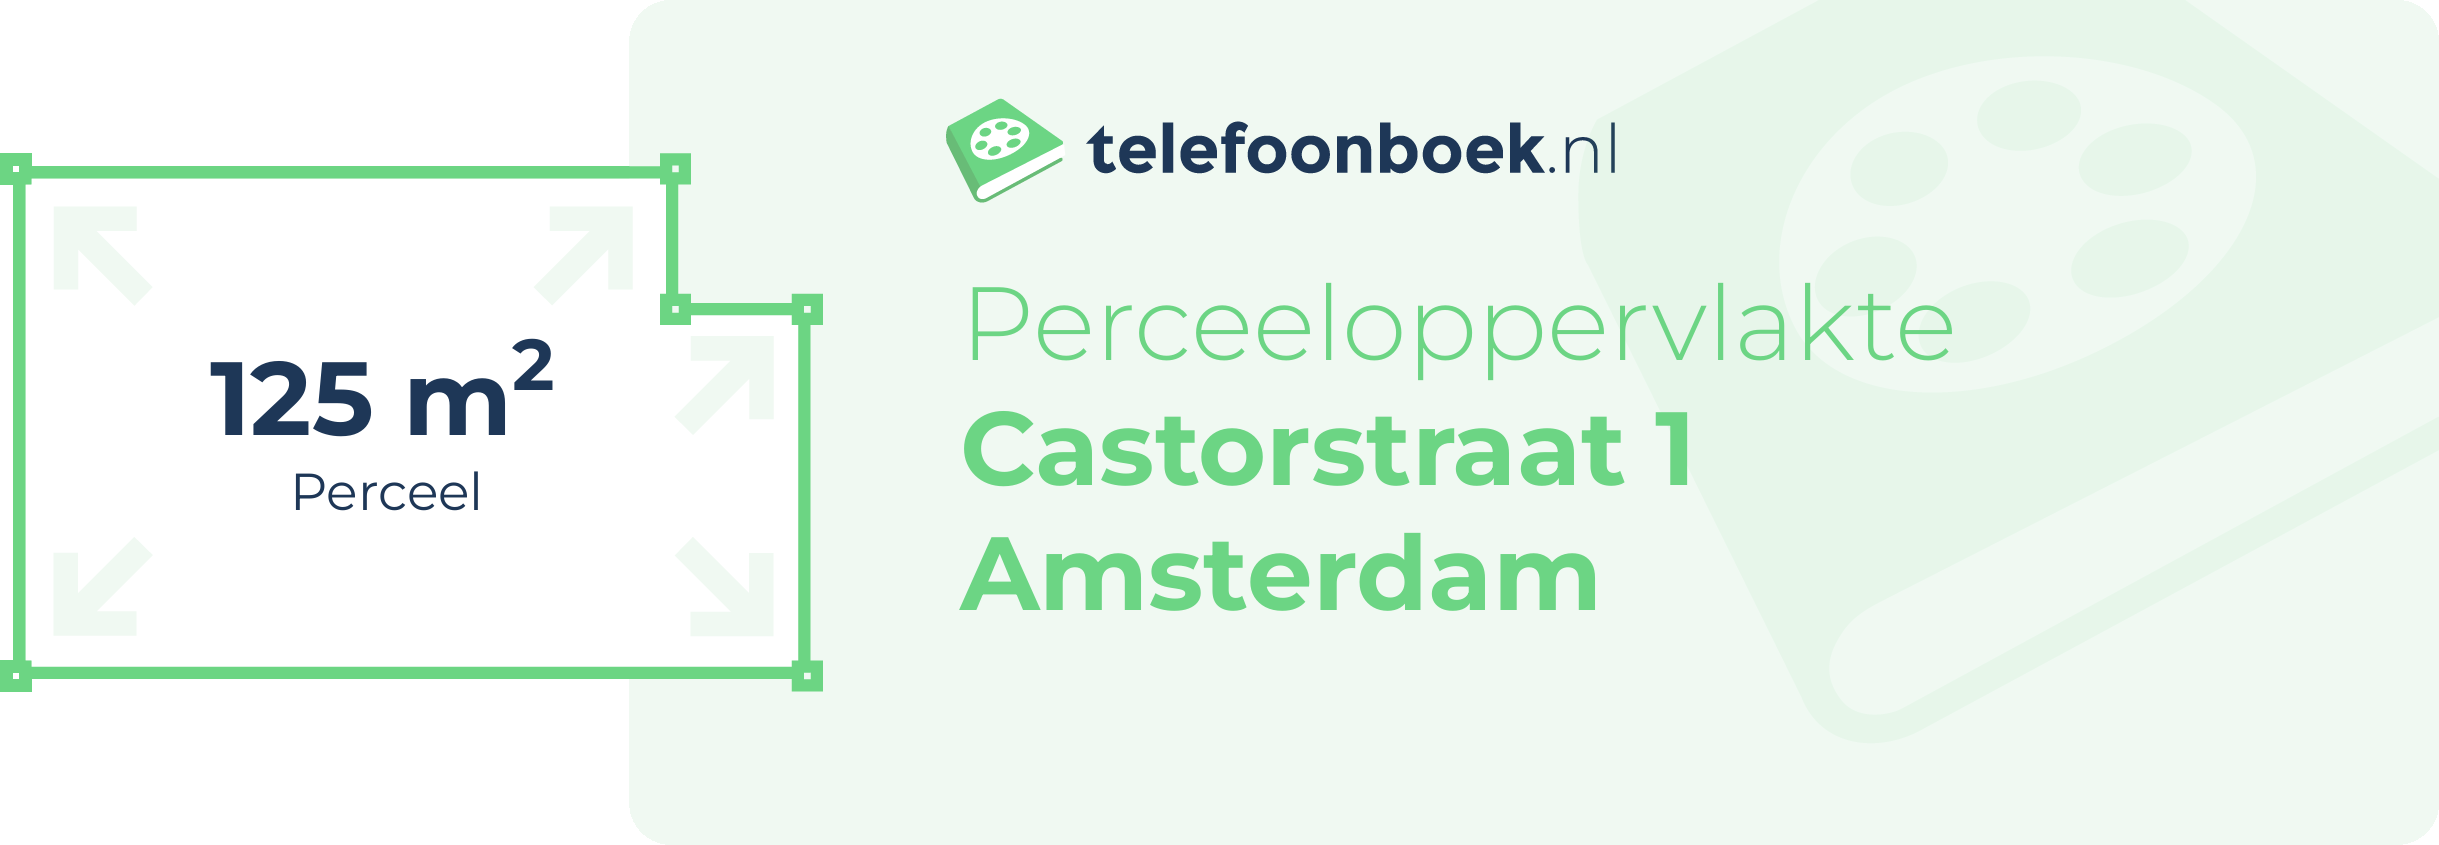 Perceeloppervlakte Castorstraat 1 Amsterdam